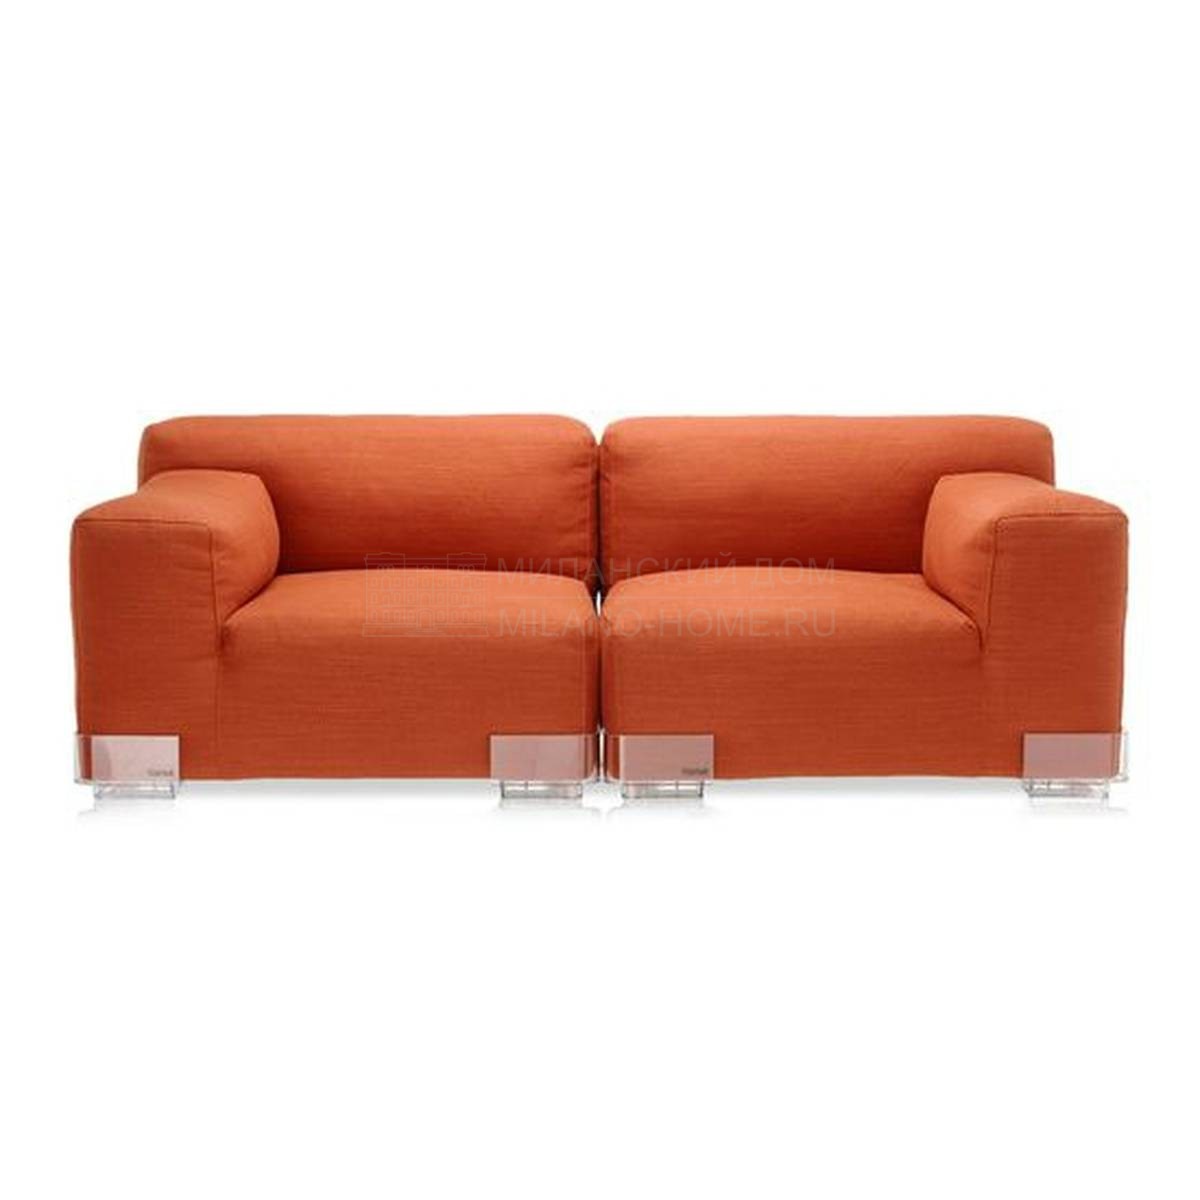 Прямой диван Plastics Duo sofa из Италии фабрики KARTELL